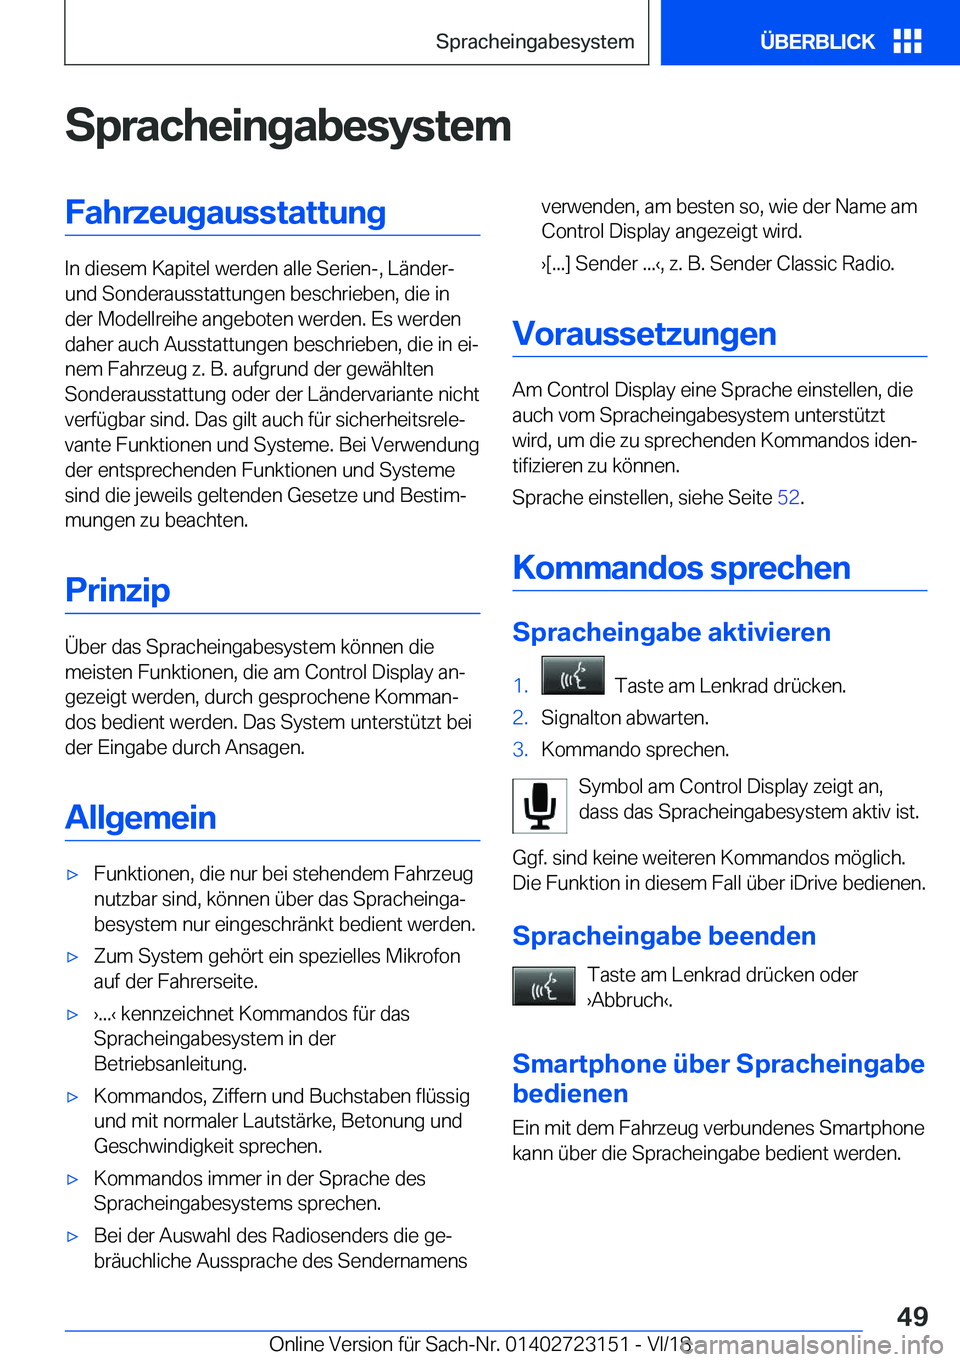 BMW 4 SERIES GRAN COUPE 2019  Betriebsanleitungen (in German) �S�p�r�a�c�h�e�i�n�g�a�b�e�s�y�s�t�e�m�F�a�h�r�z�e�u�g�a�u�s�s�t�a�t�t�u�n�g
�I�n��d�i�e�s�e�m��K�a�p�i�t�e�l��w�e�r�d�e�n��a�l�l�e��S�e�r�i�e�n�-�,��L�